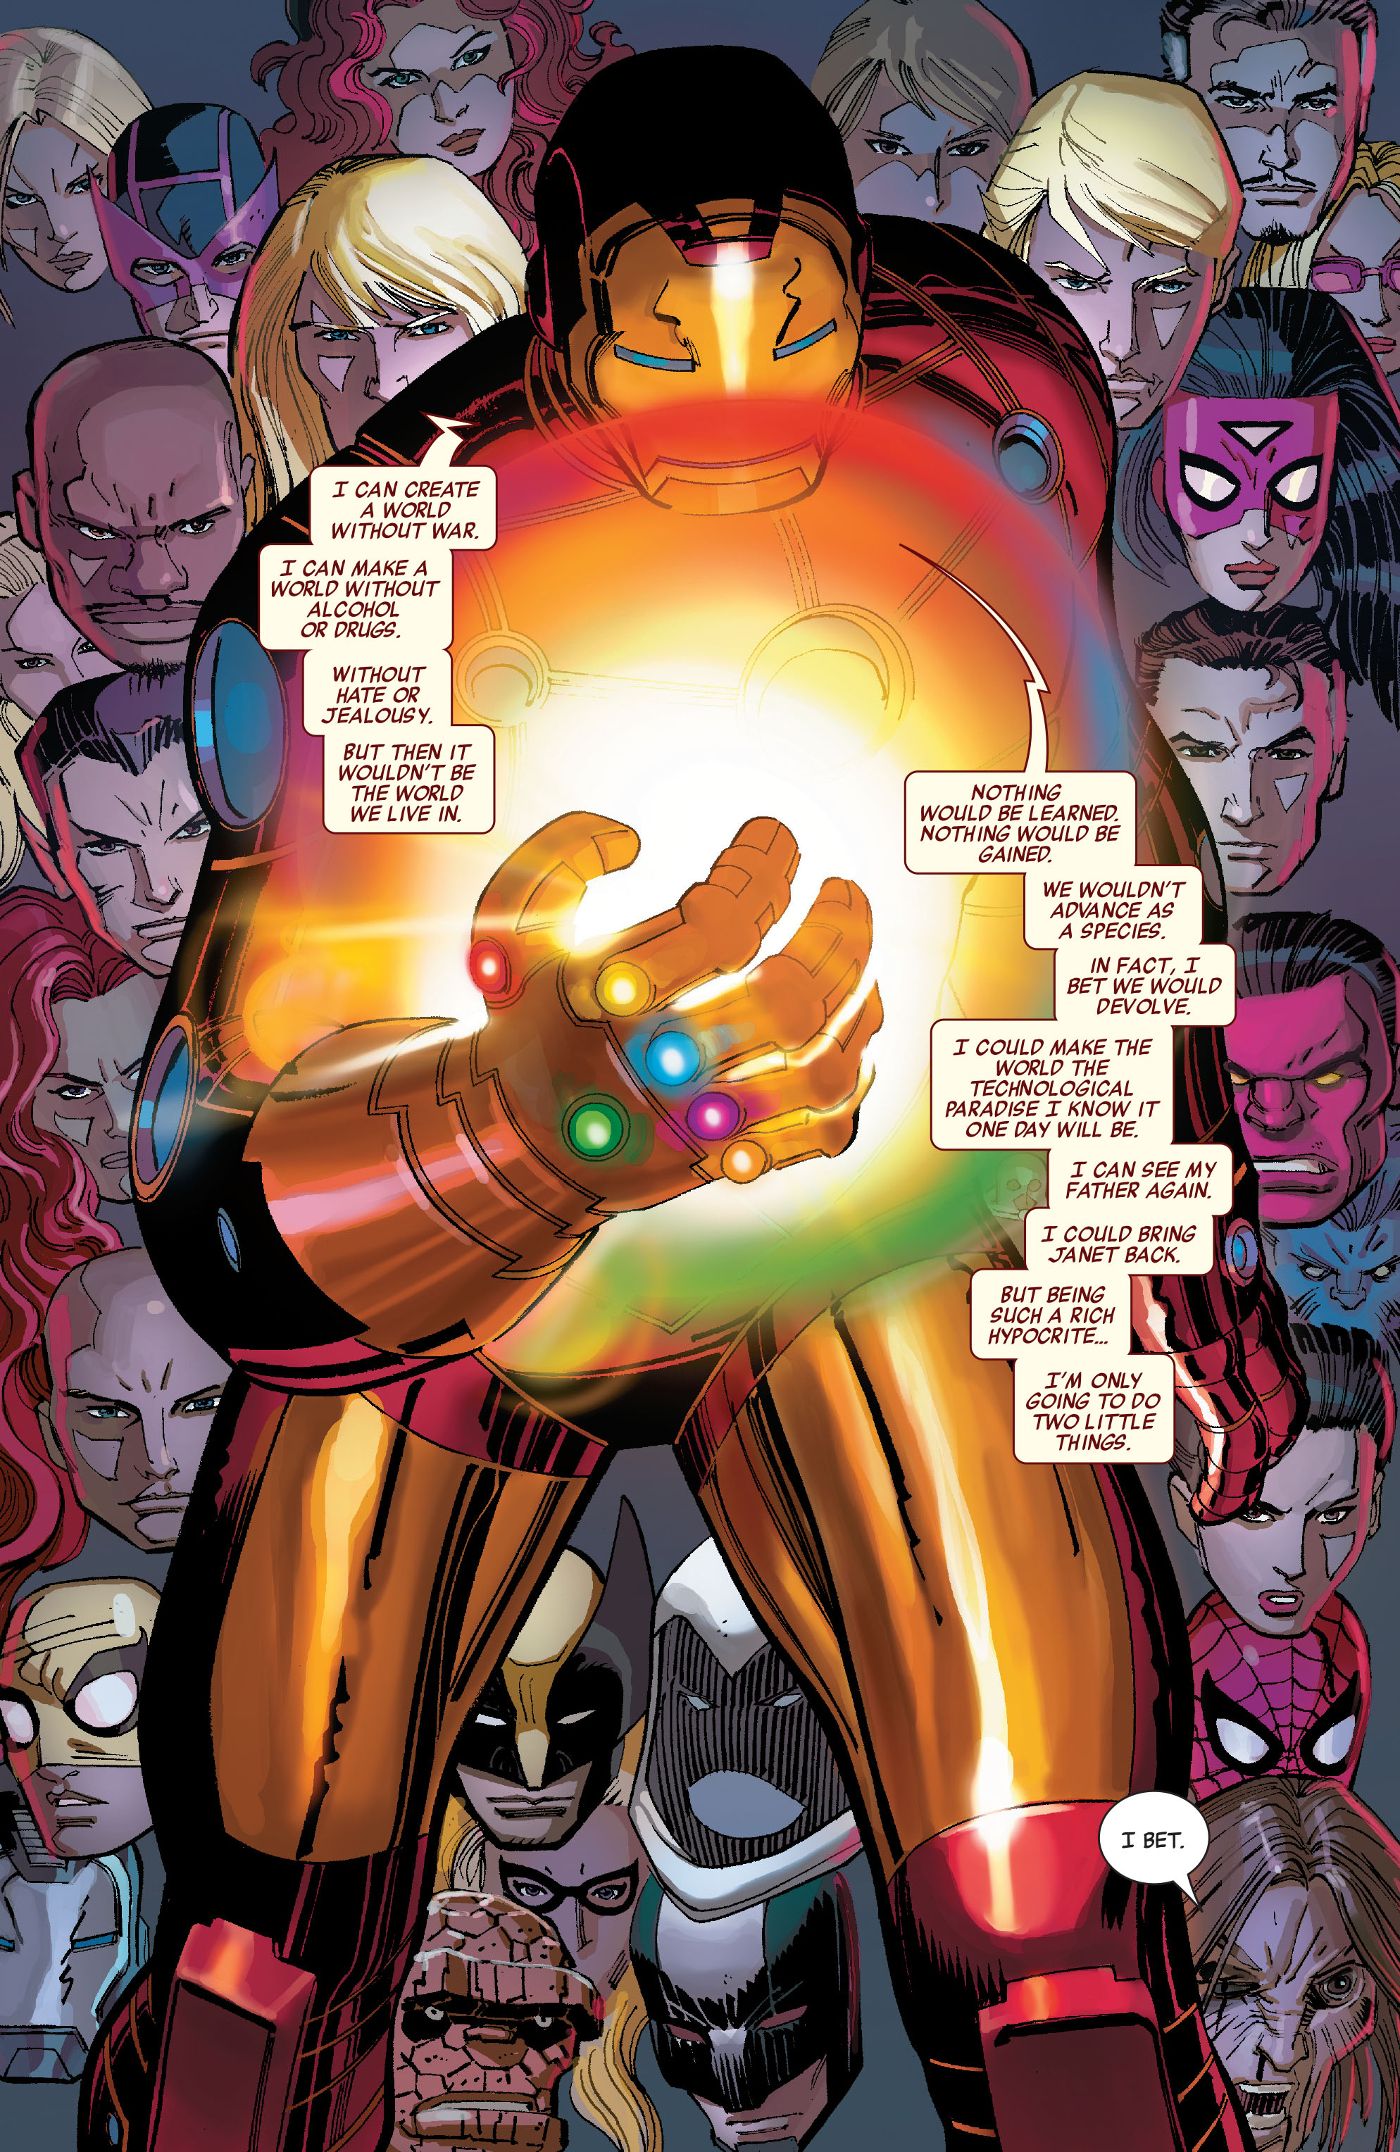 Iron-Man-uses-Infinity-Gauntlet-Avengers-comics